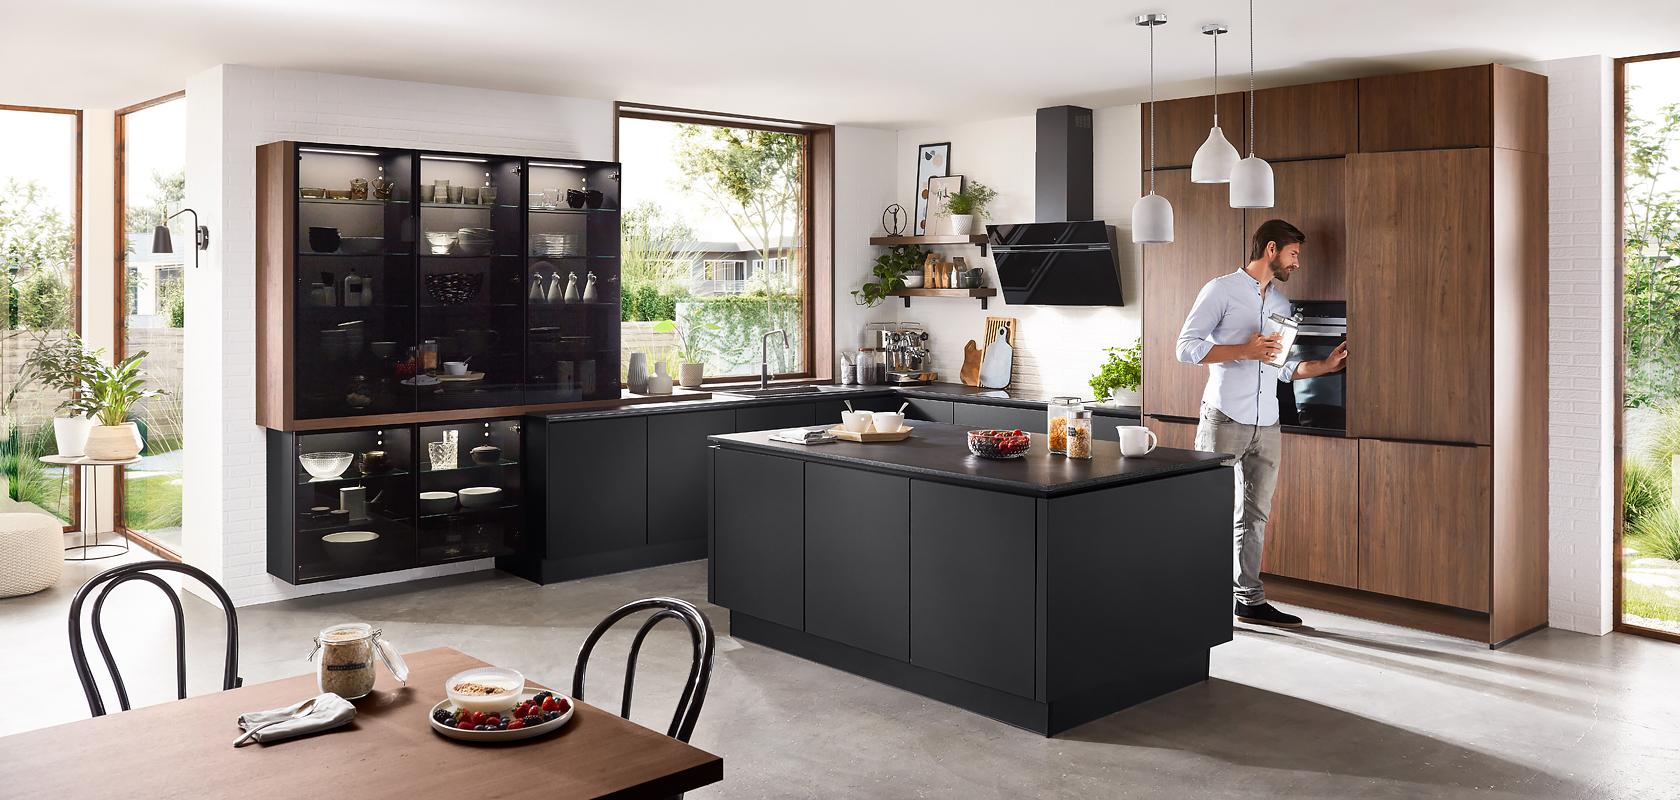 Intérieur de cuisine moderne avec des armoires noires élégantes, des accents en bois, et un homme préparant une boisson sur le comptoir, offrant une ambiance à la fois chaleureuse et contemporaine.